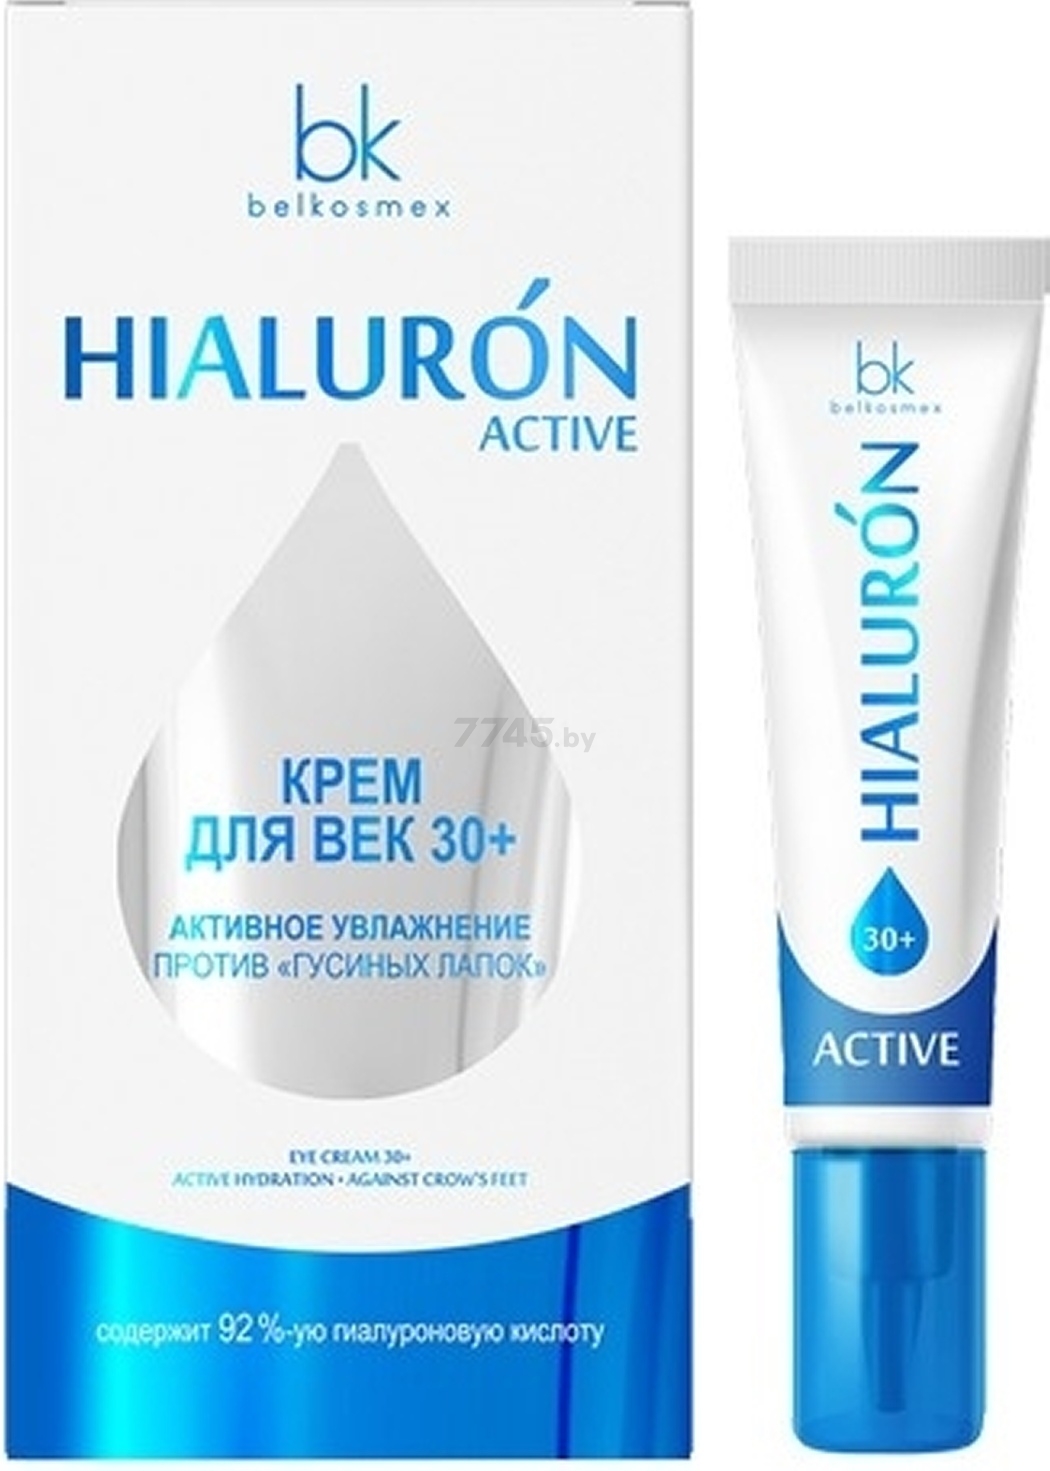 Крем для век BELKOSMEX Hialuron Active 30+ Активное увлажнение против гусиных лапок 15 мл (4810090010614)